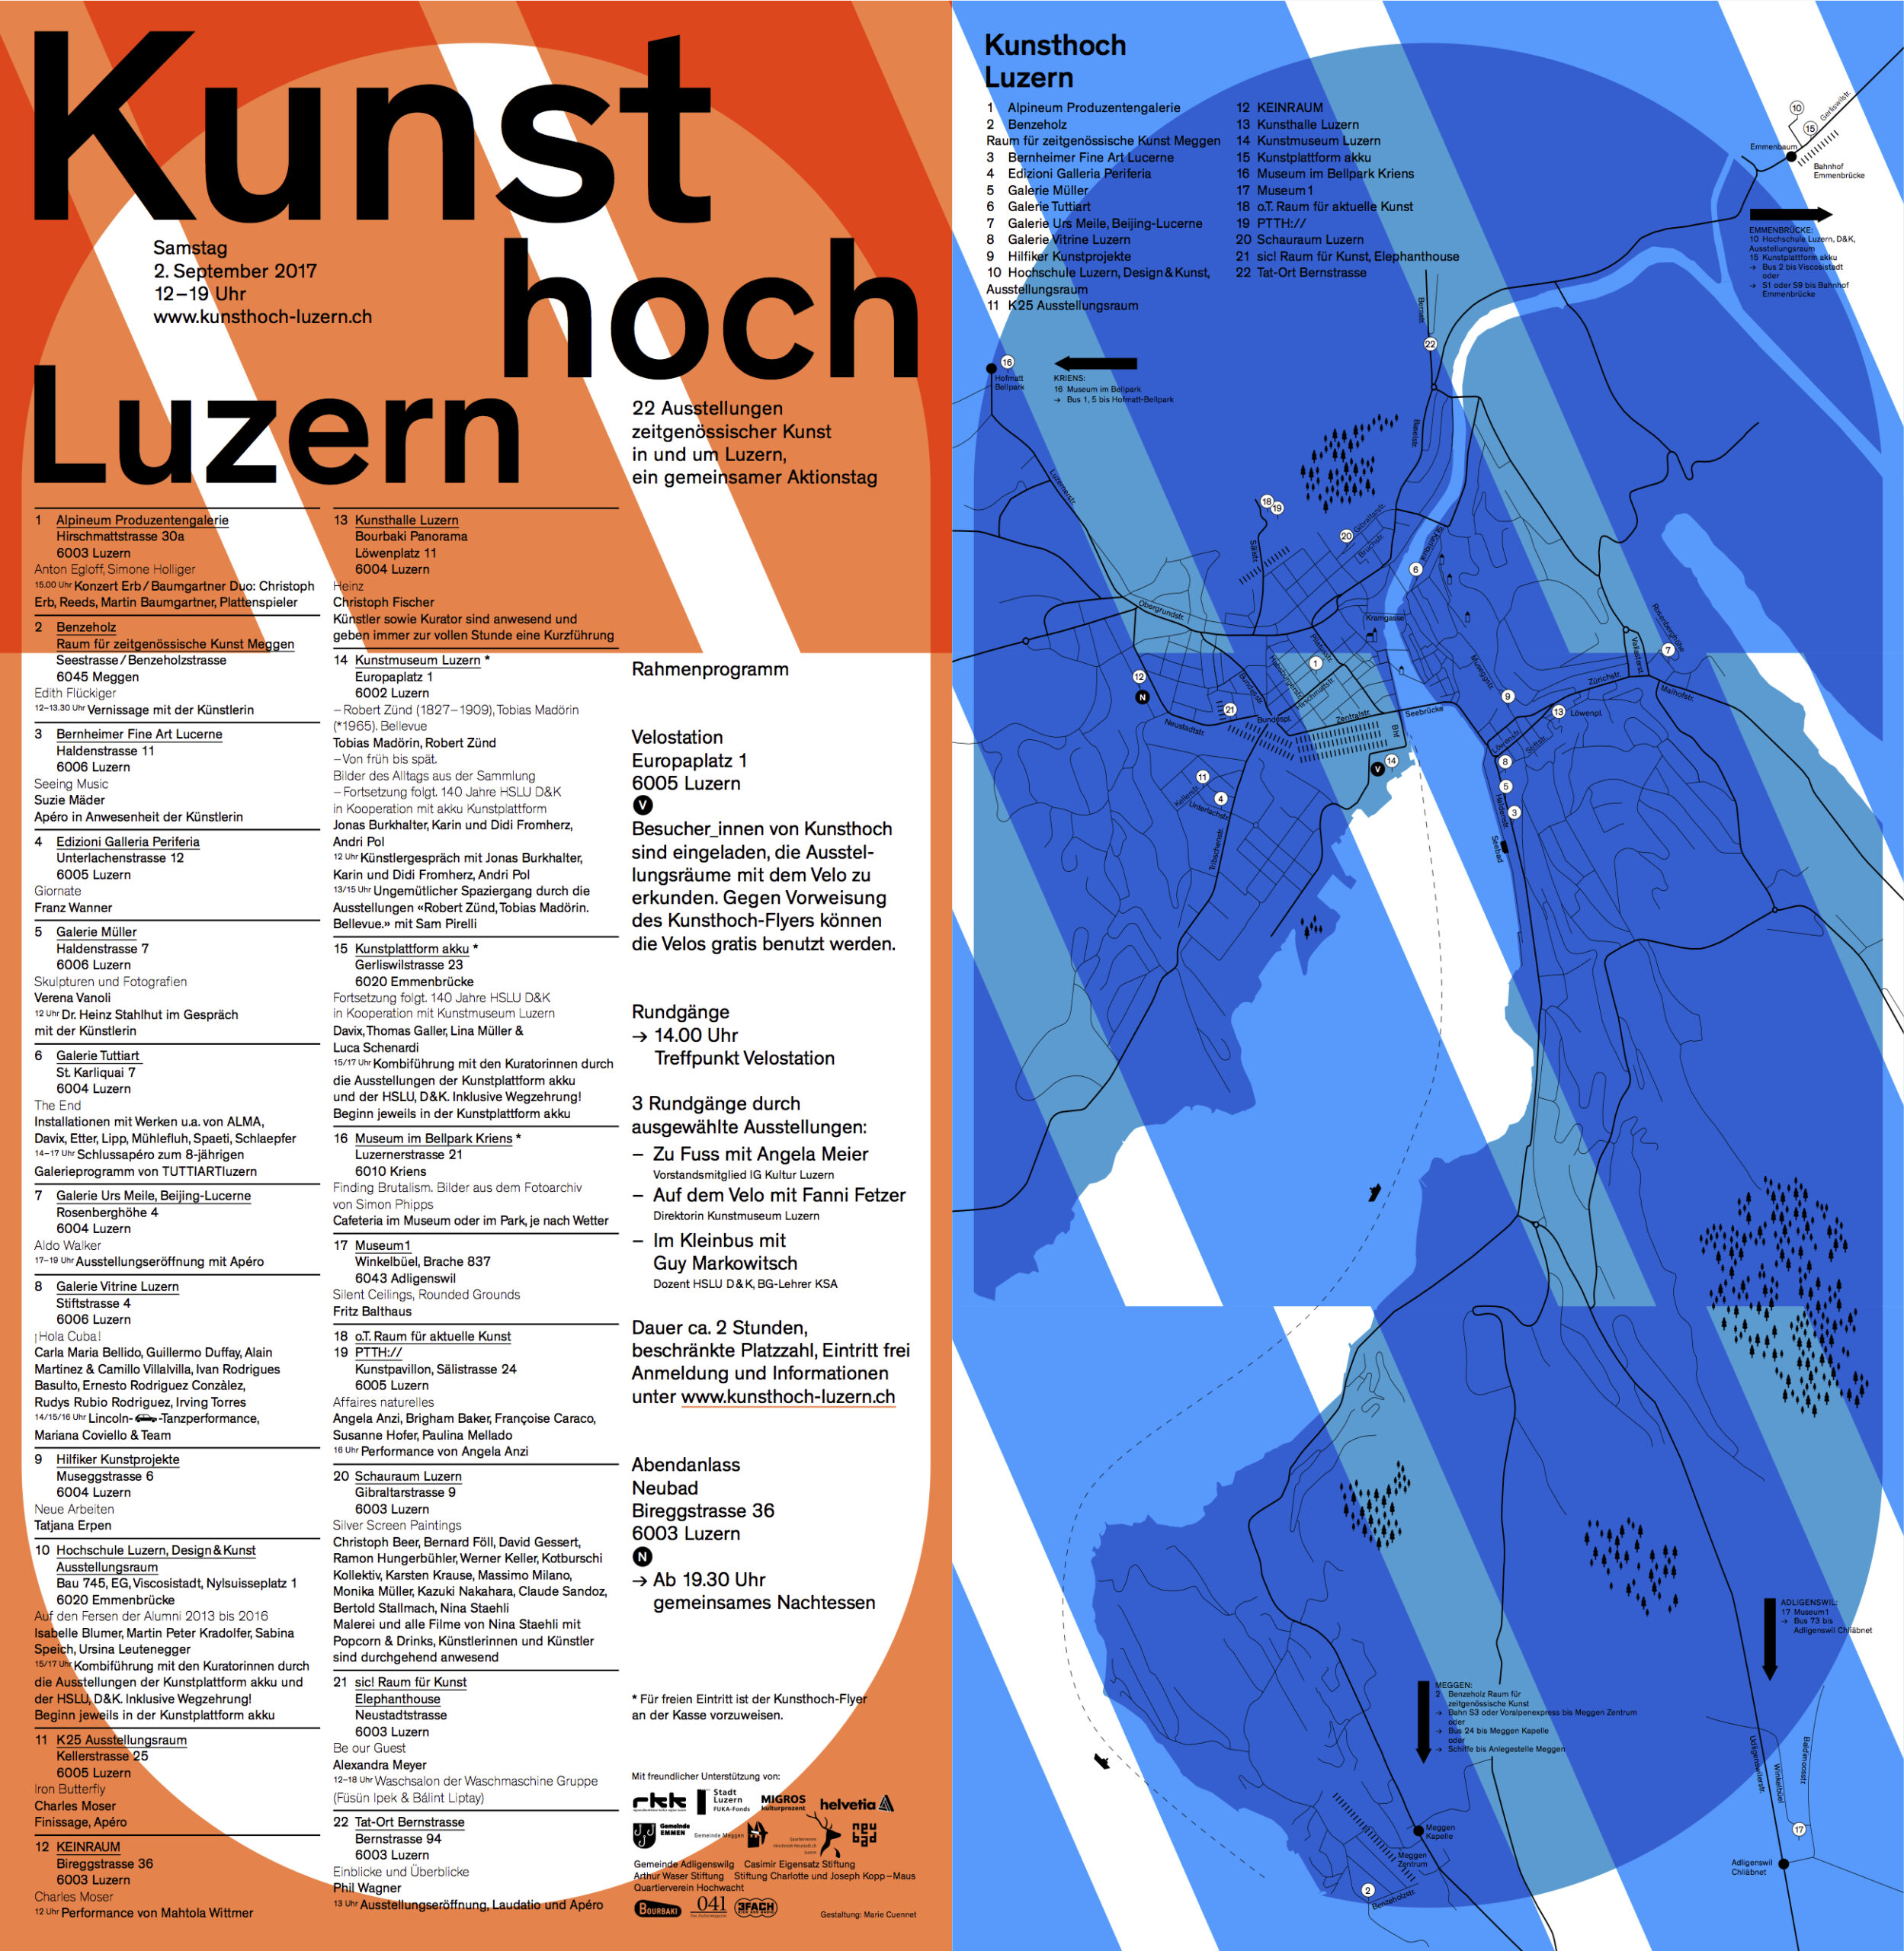 Kunsthoch Luzern - gemeinsamer Aktionstag der Luzerner Ausstellungsräume